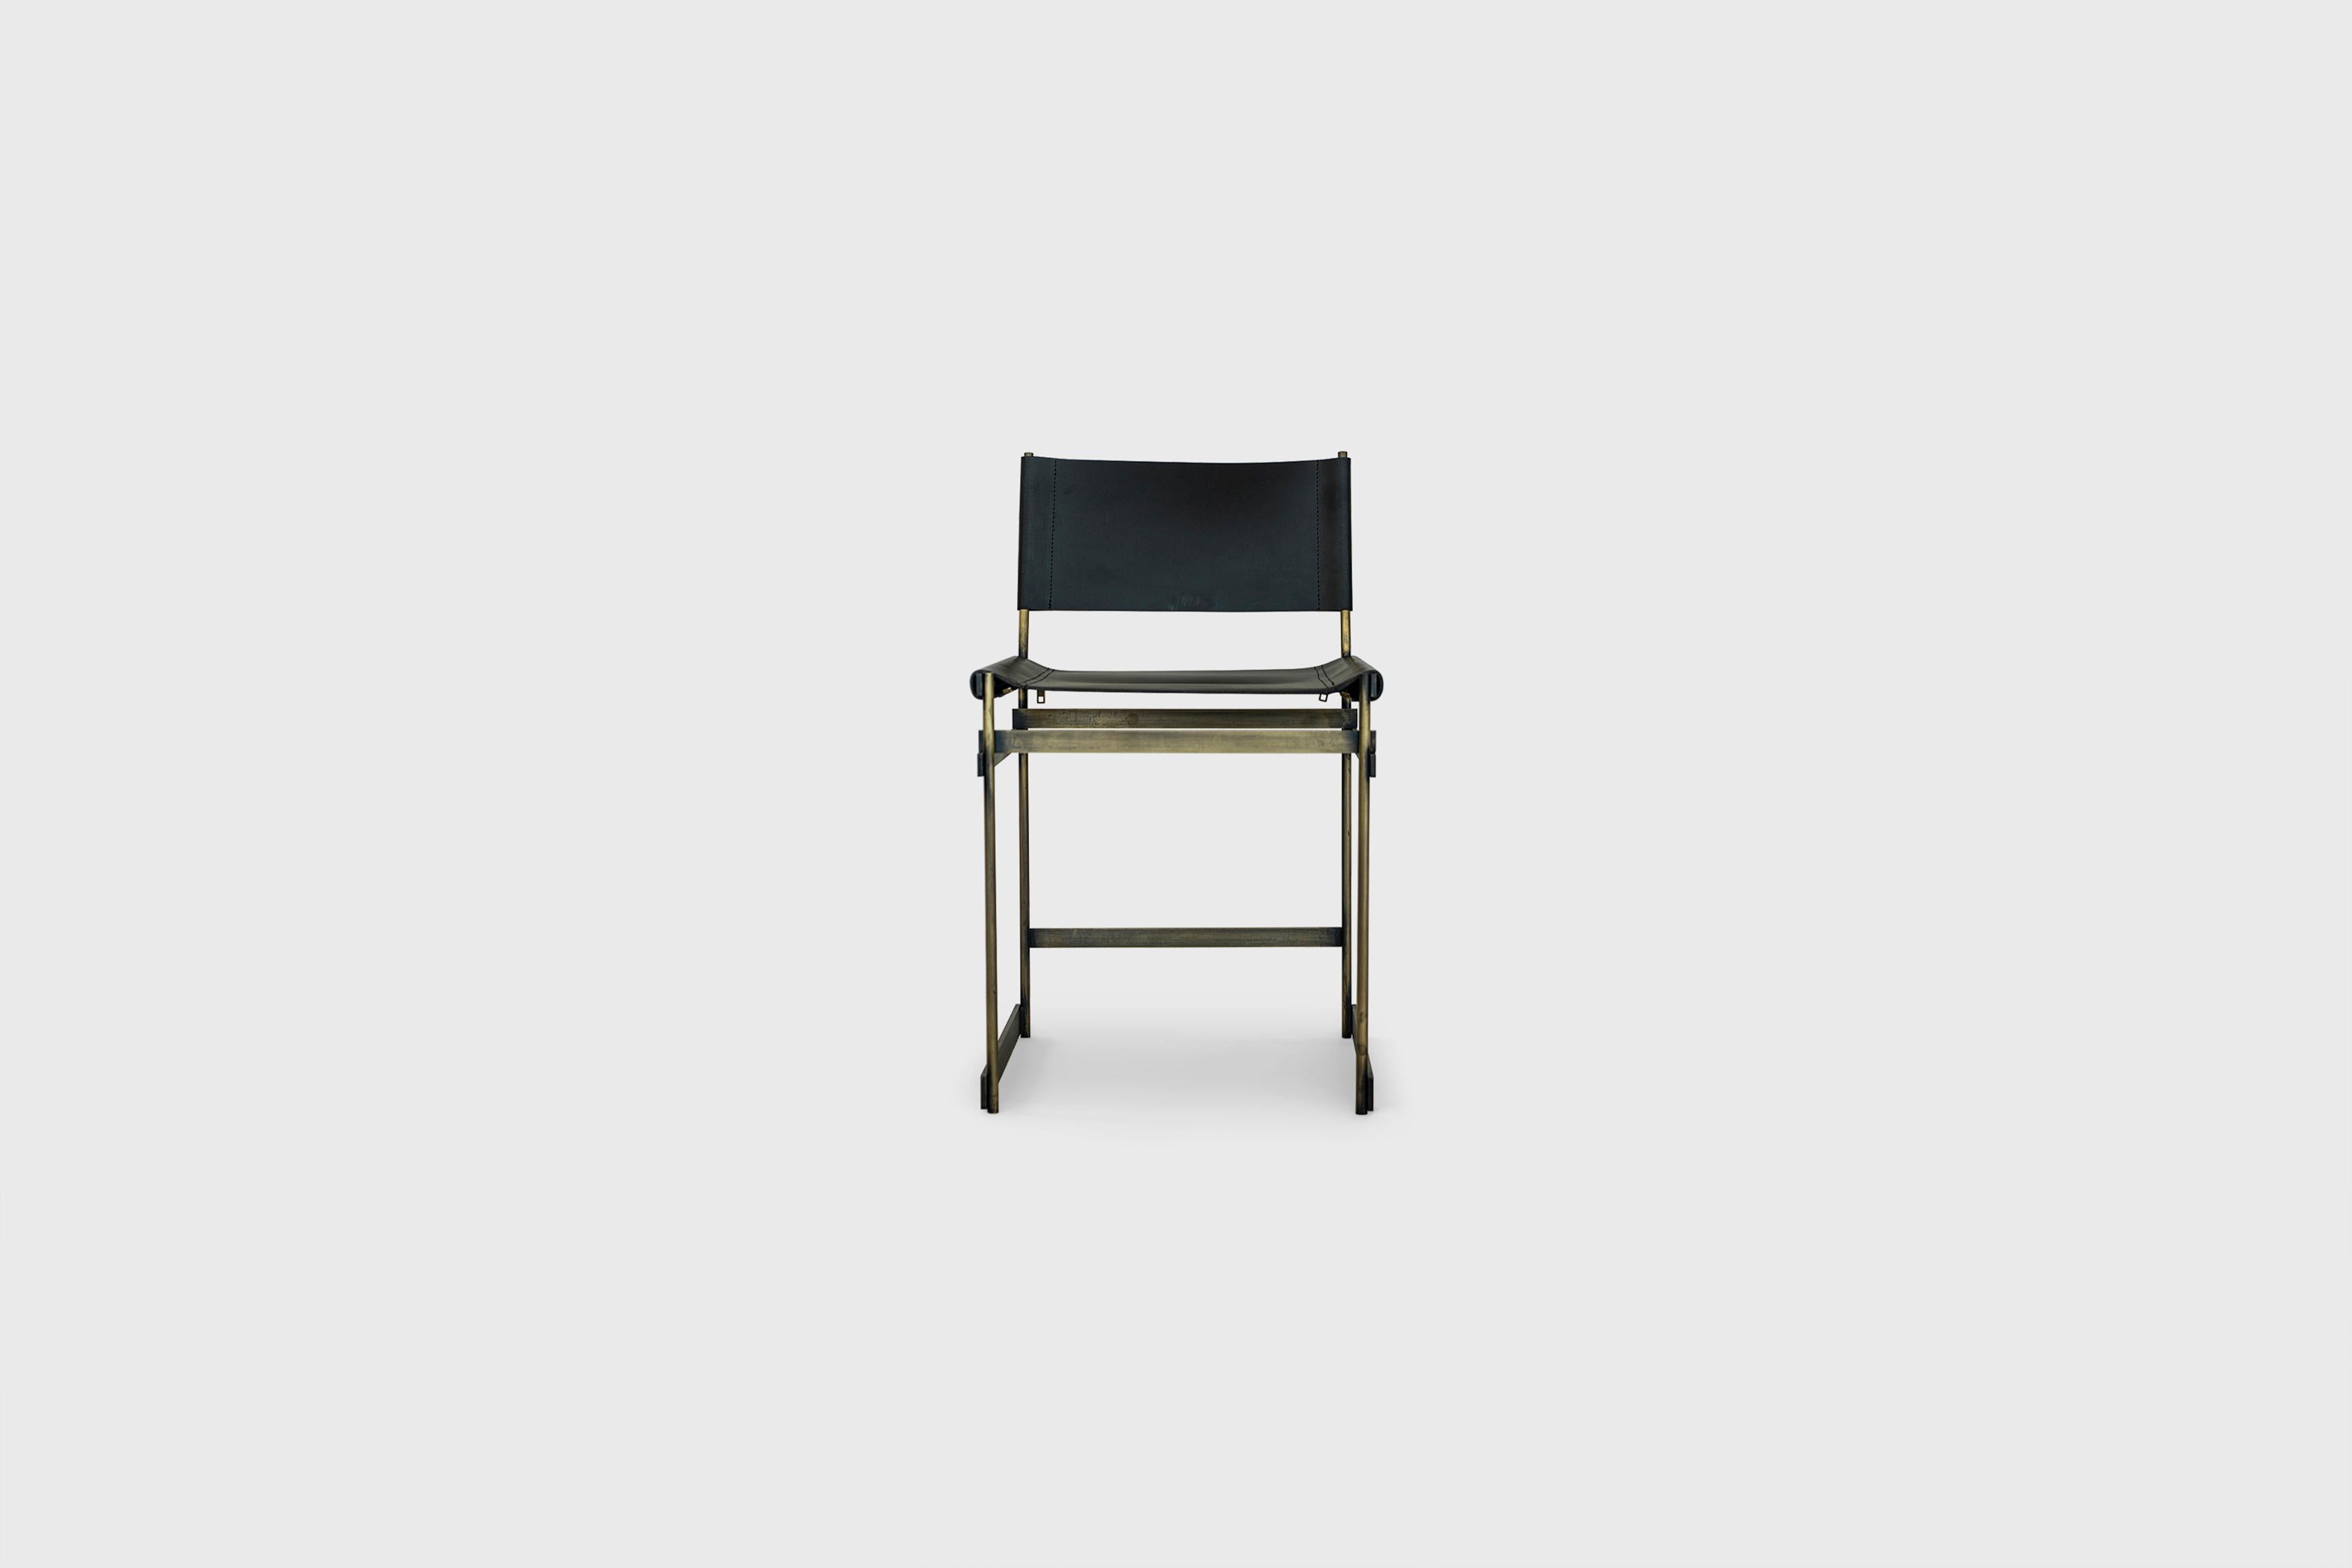 Chaise de salle à manger en cuir Redo par Atra Design
Dimensions : D 51 x L 44,3 x H 79,6 cm
Matériaux : cuir, acier pavonado bronze.

Design/One
Nous sommes Atra, une marque de mobilier produite par Atra form, un site de production haut de gamme